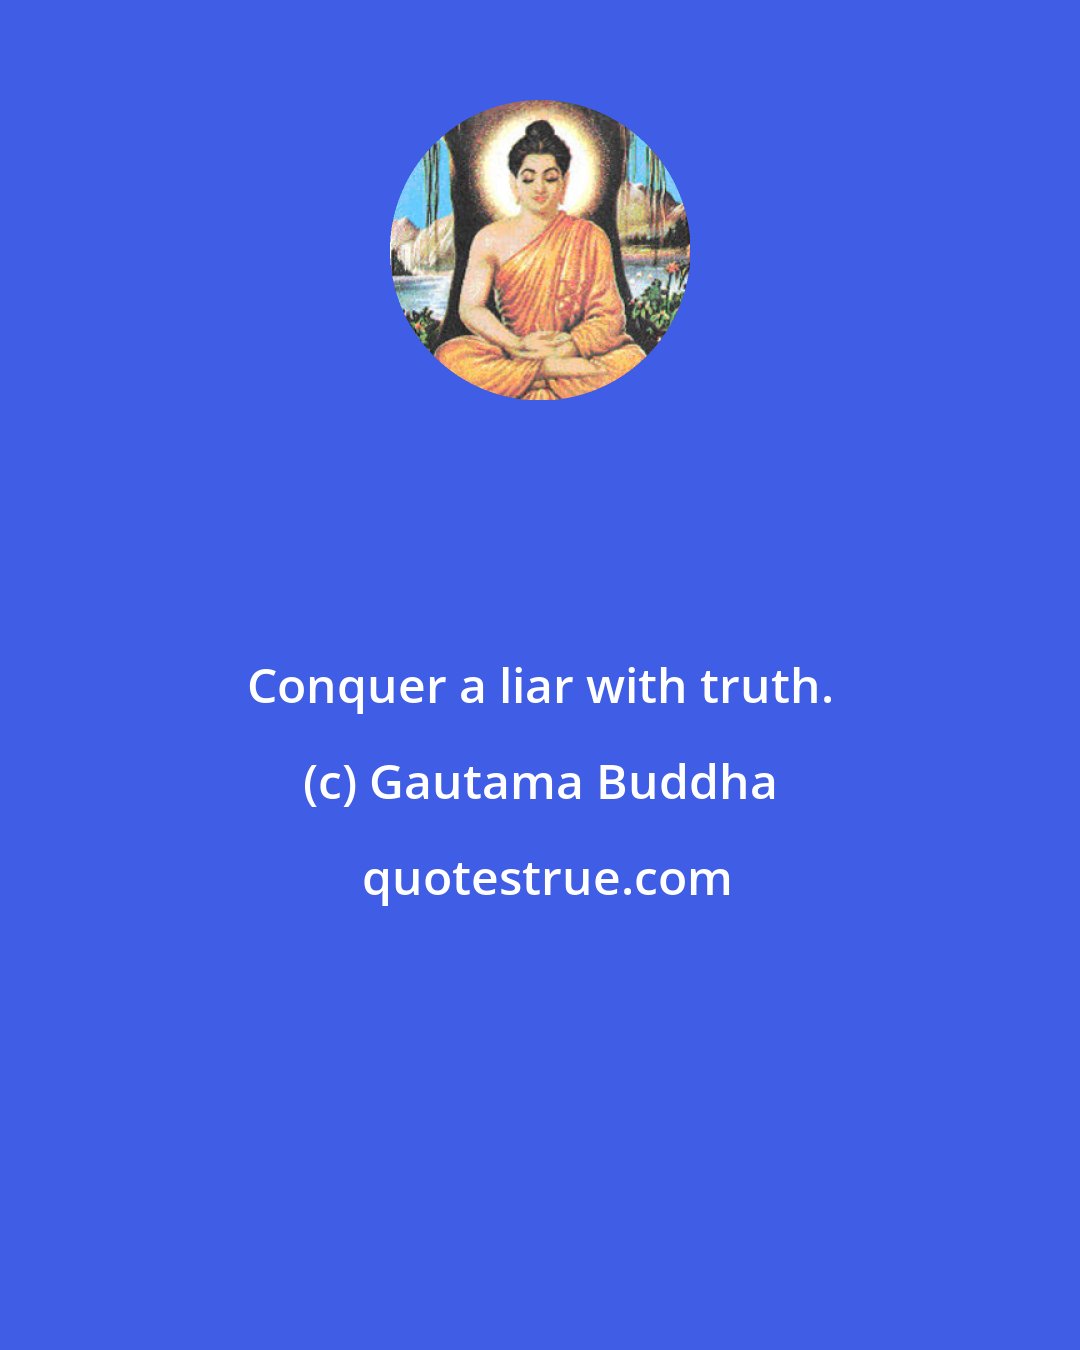 Gautama Buddha: Conquer a liar with truth.